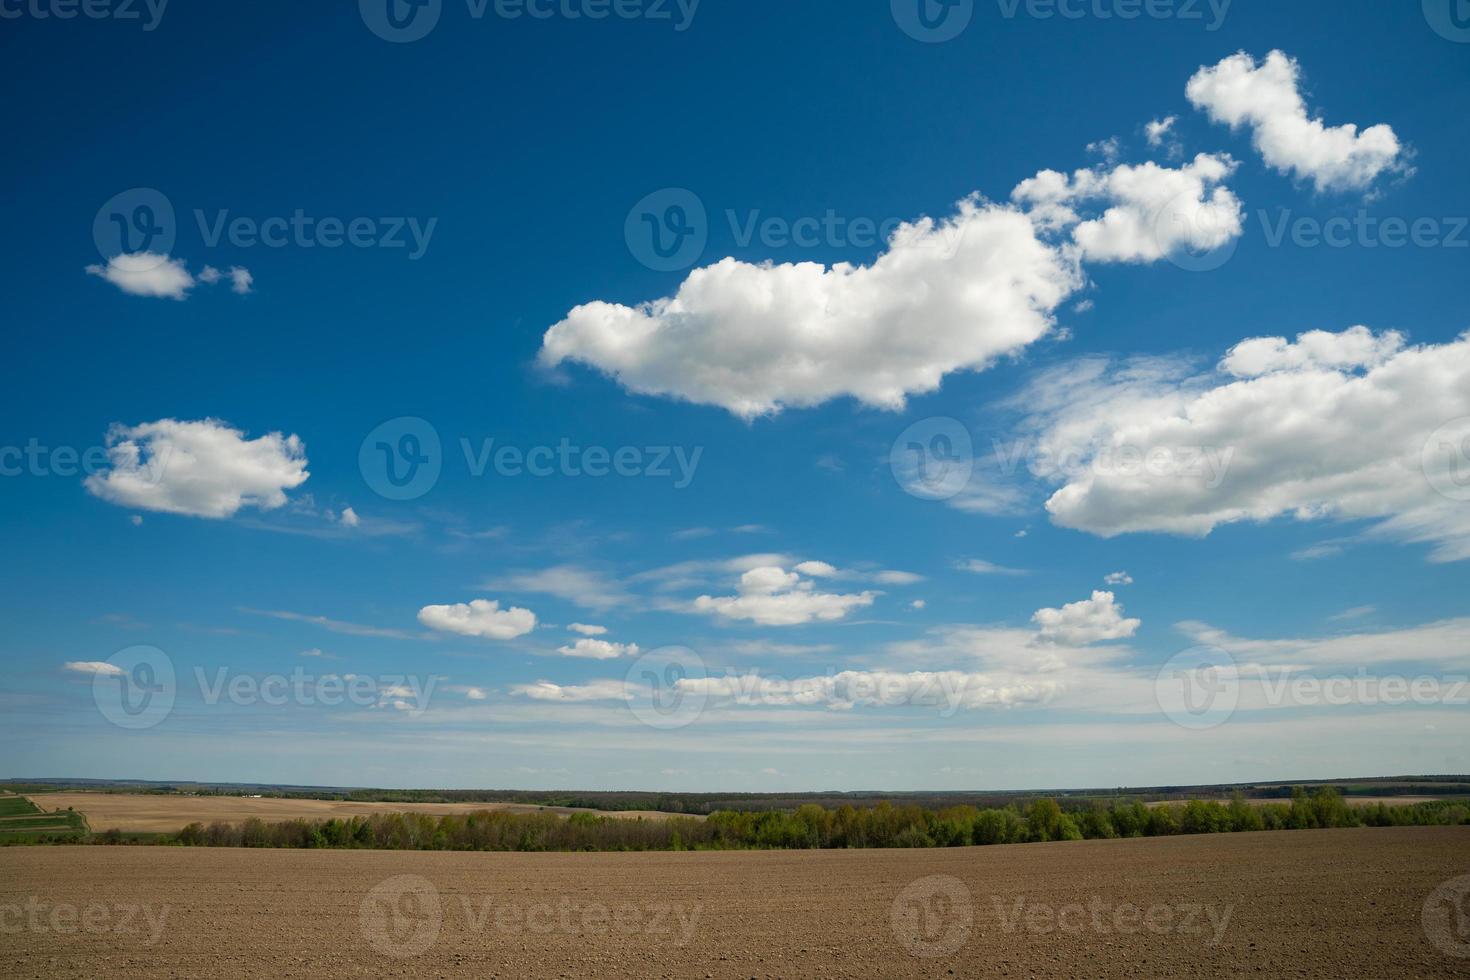 hermoso paisaje de cielo azul con nubes y campo en ucrania foto